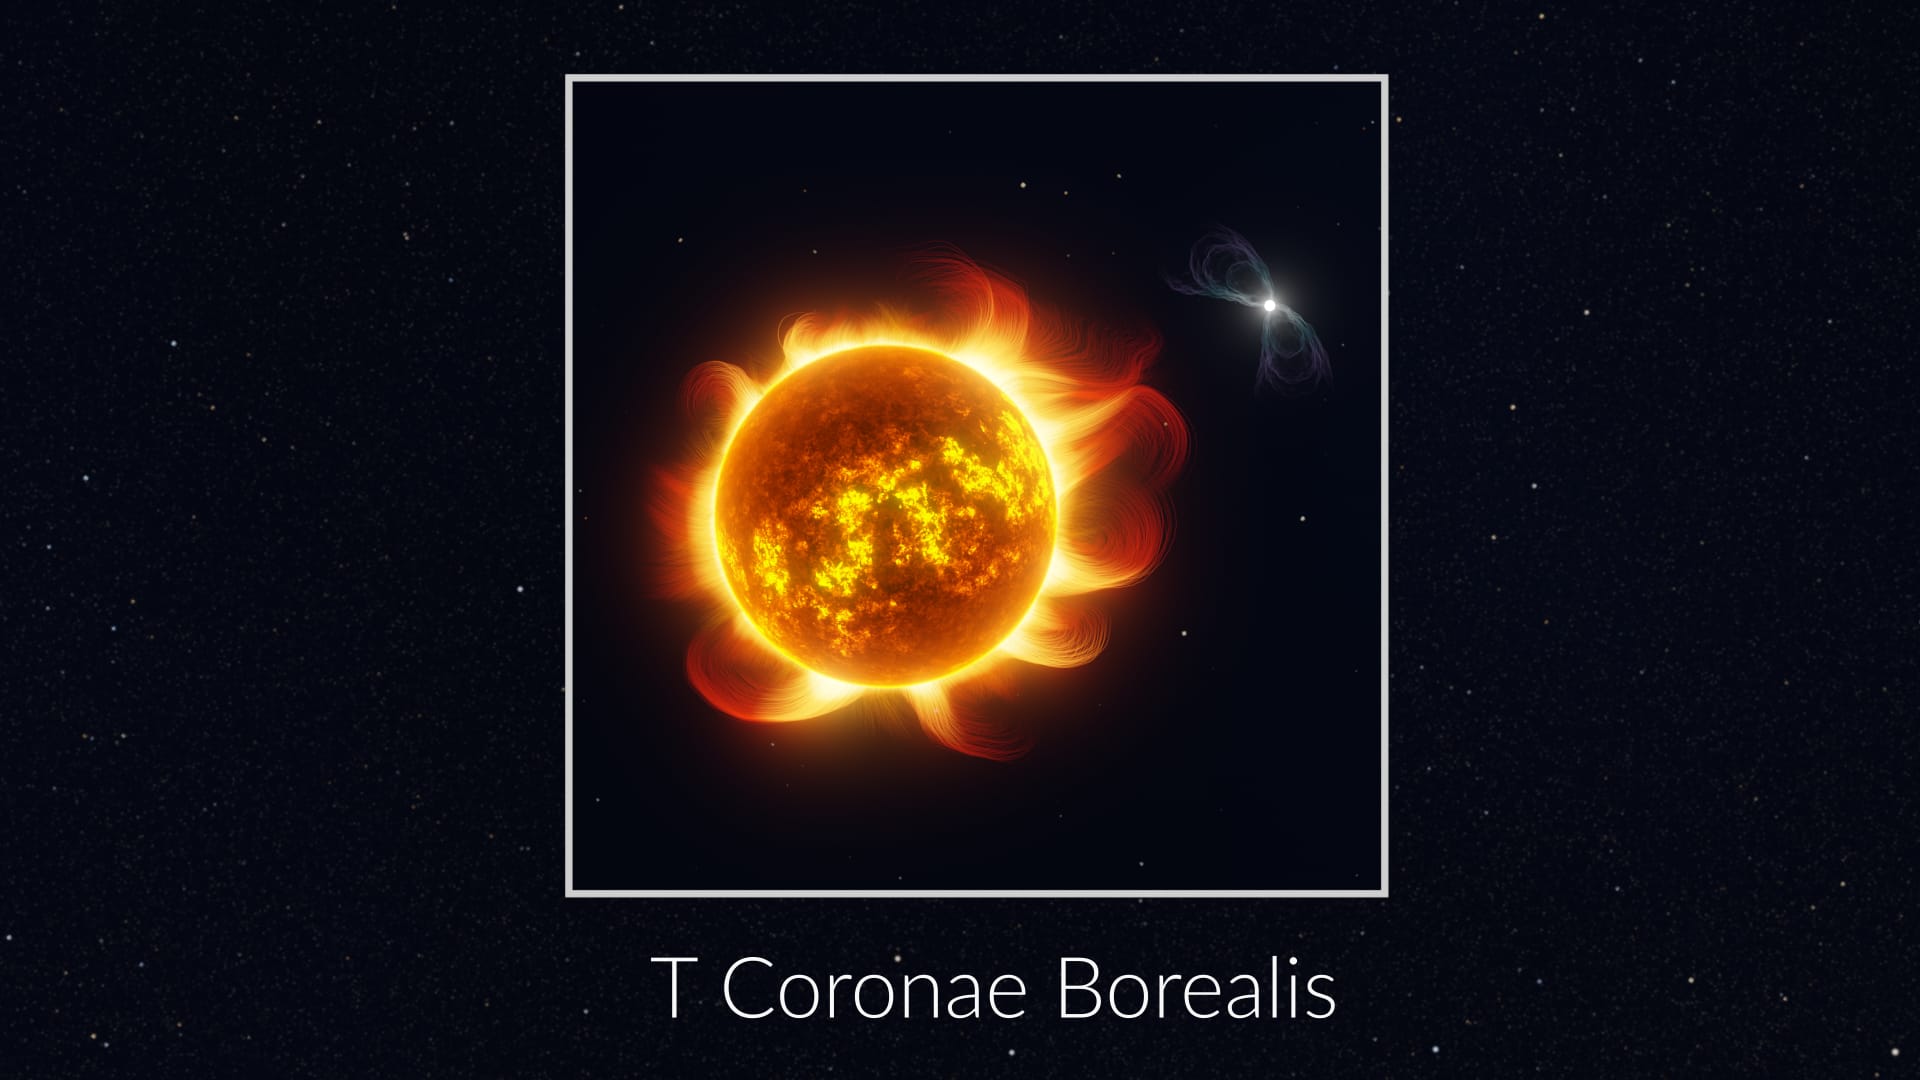 T Coronae Borealis